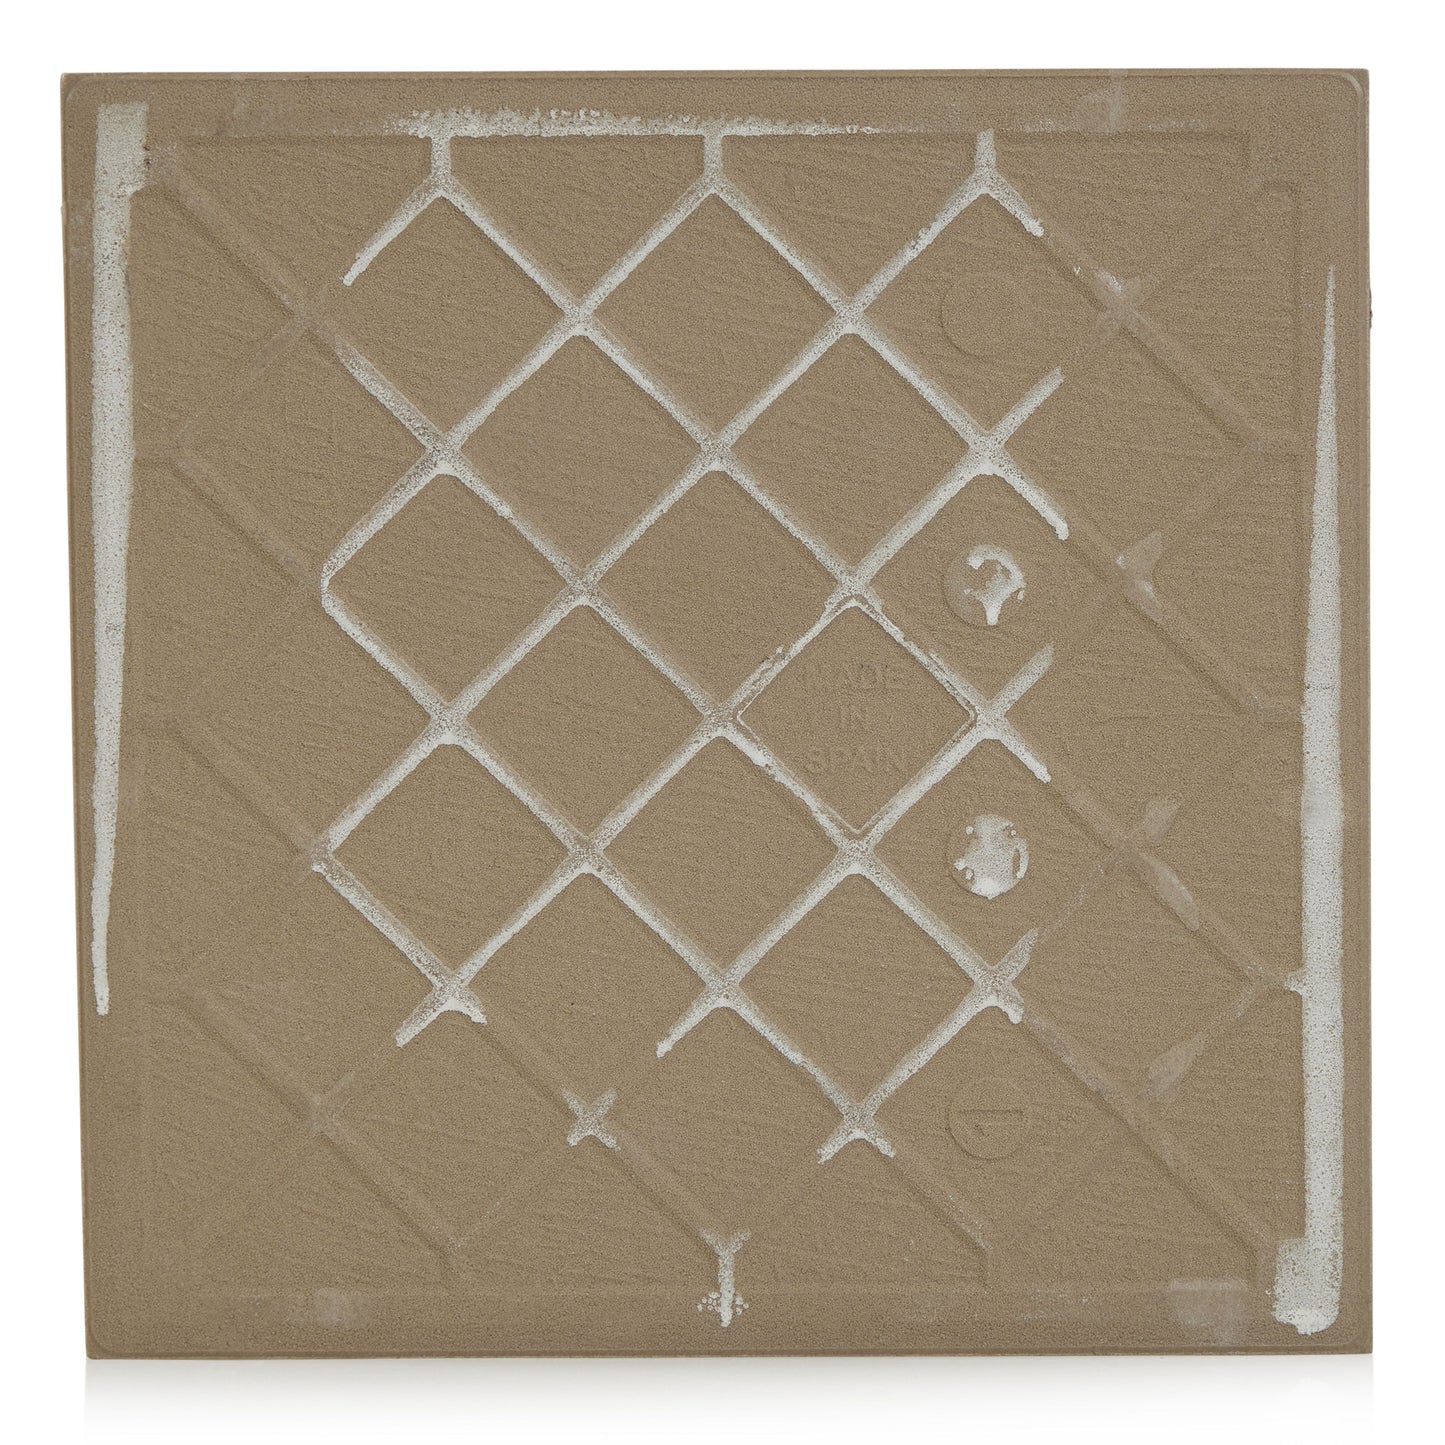 9x9 Festival Cold porcelain tile - Industry Tile